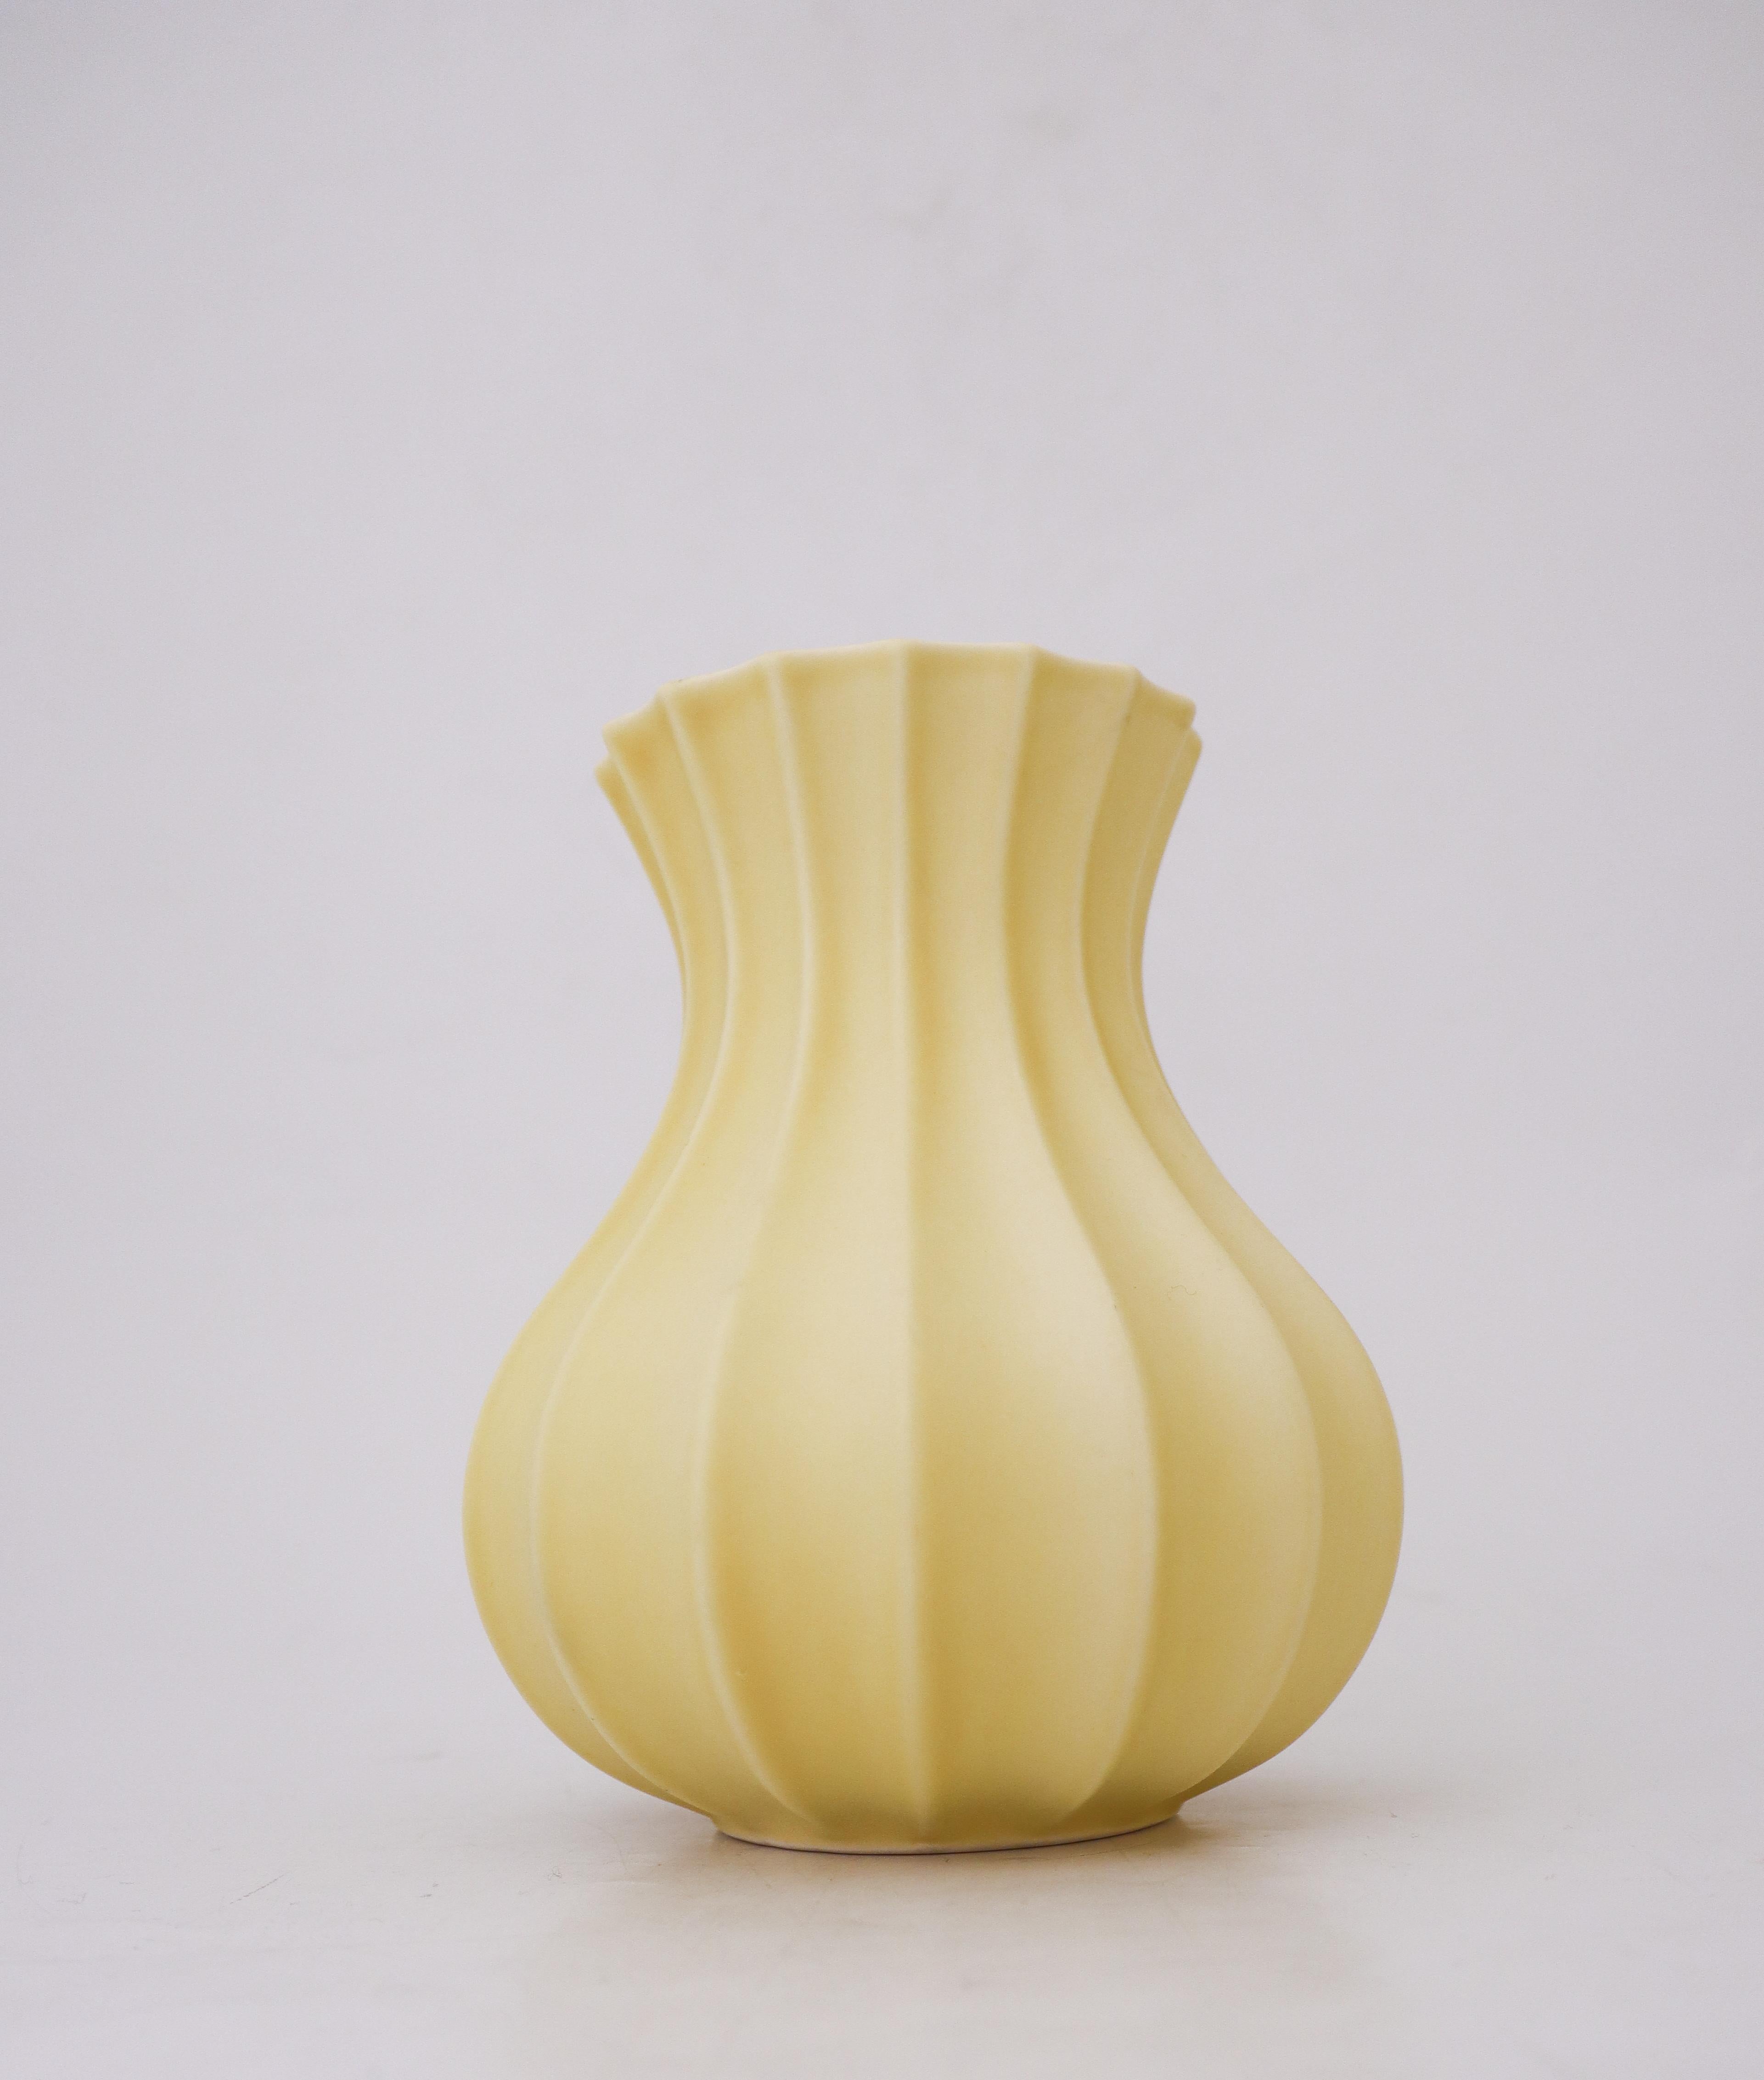 Un joli vase jaune conçu par Pia Rönndahl chez Rörstrand dans les années 1980. Le vase mesure 17,5 cm de haut et est en excellent état, à l'exception de quelques petites marques. Il est marqué comme sur la photo et est de 2ème qualité. 

